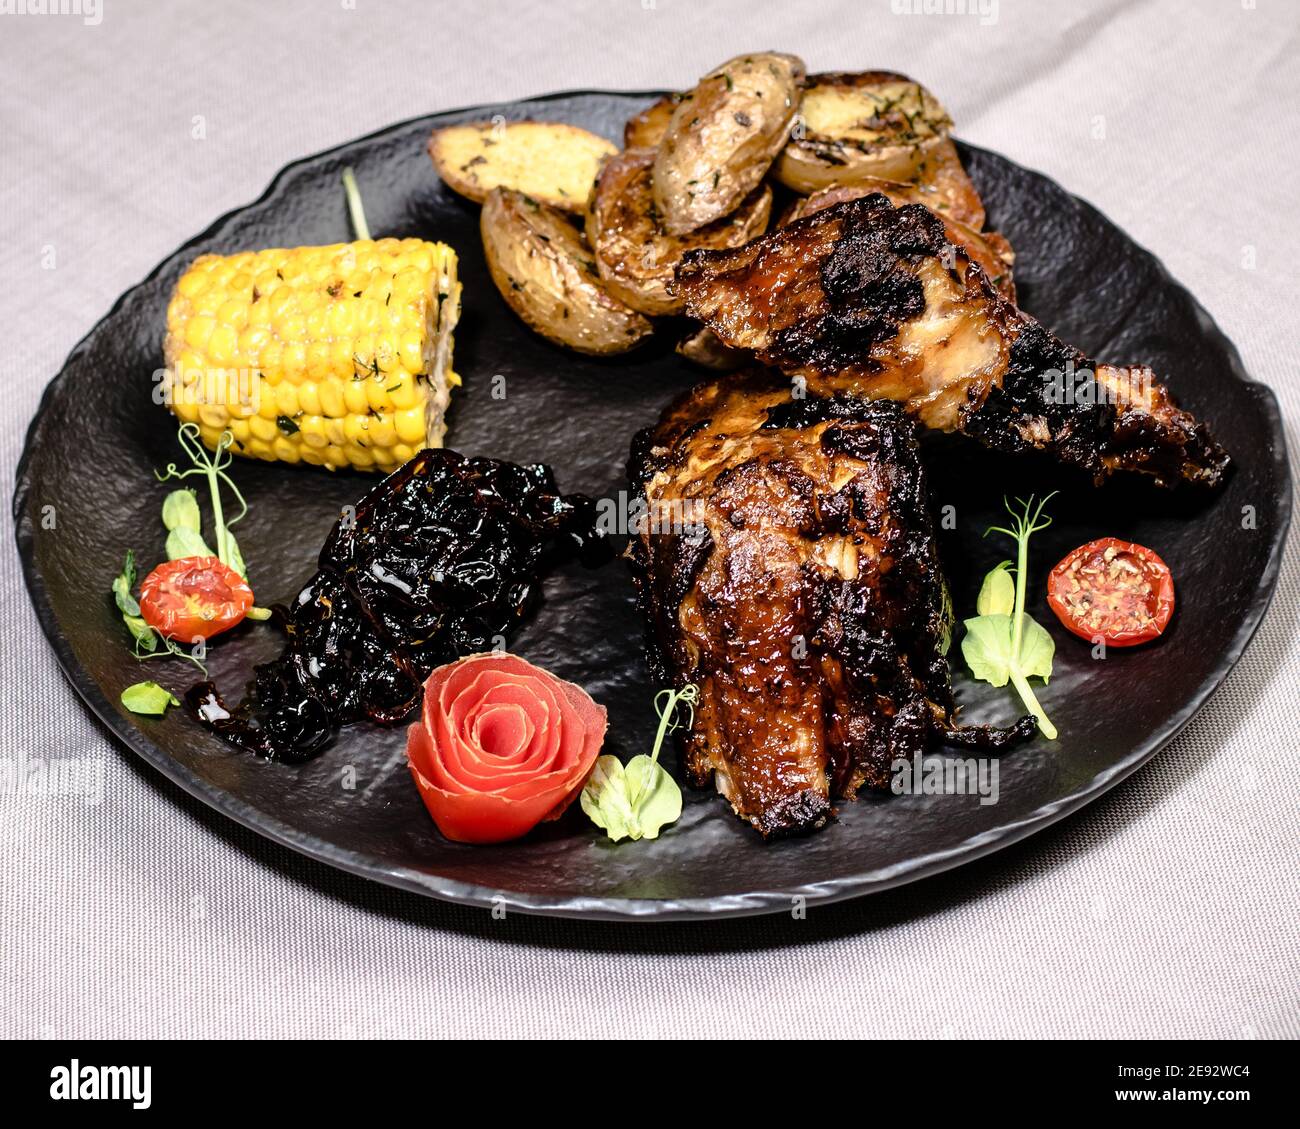 Gebratene Rippchen Hexensauce und Gemüse in einem Restaurant zubereitet  Stockfotografie - Alamy